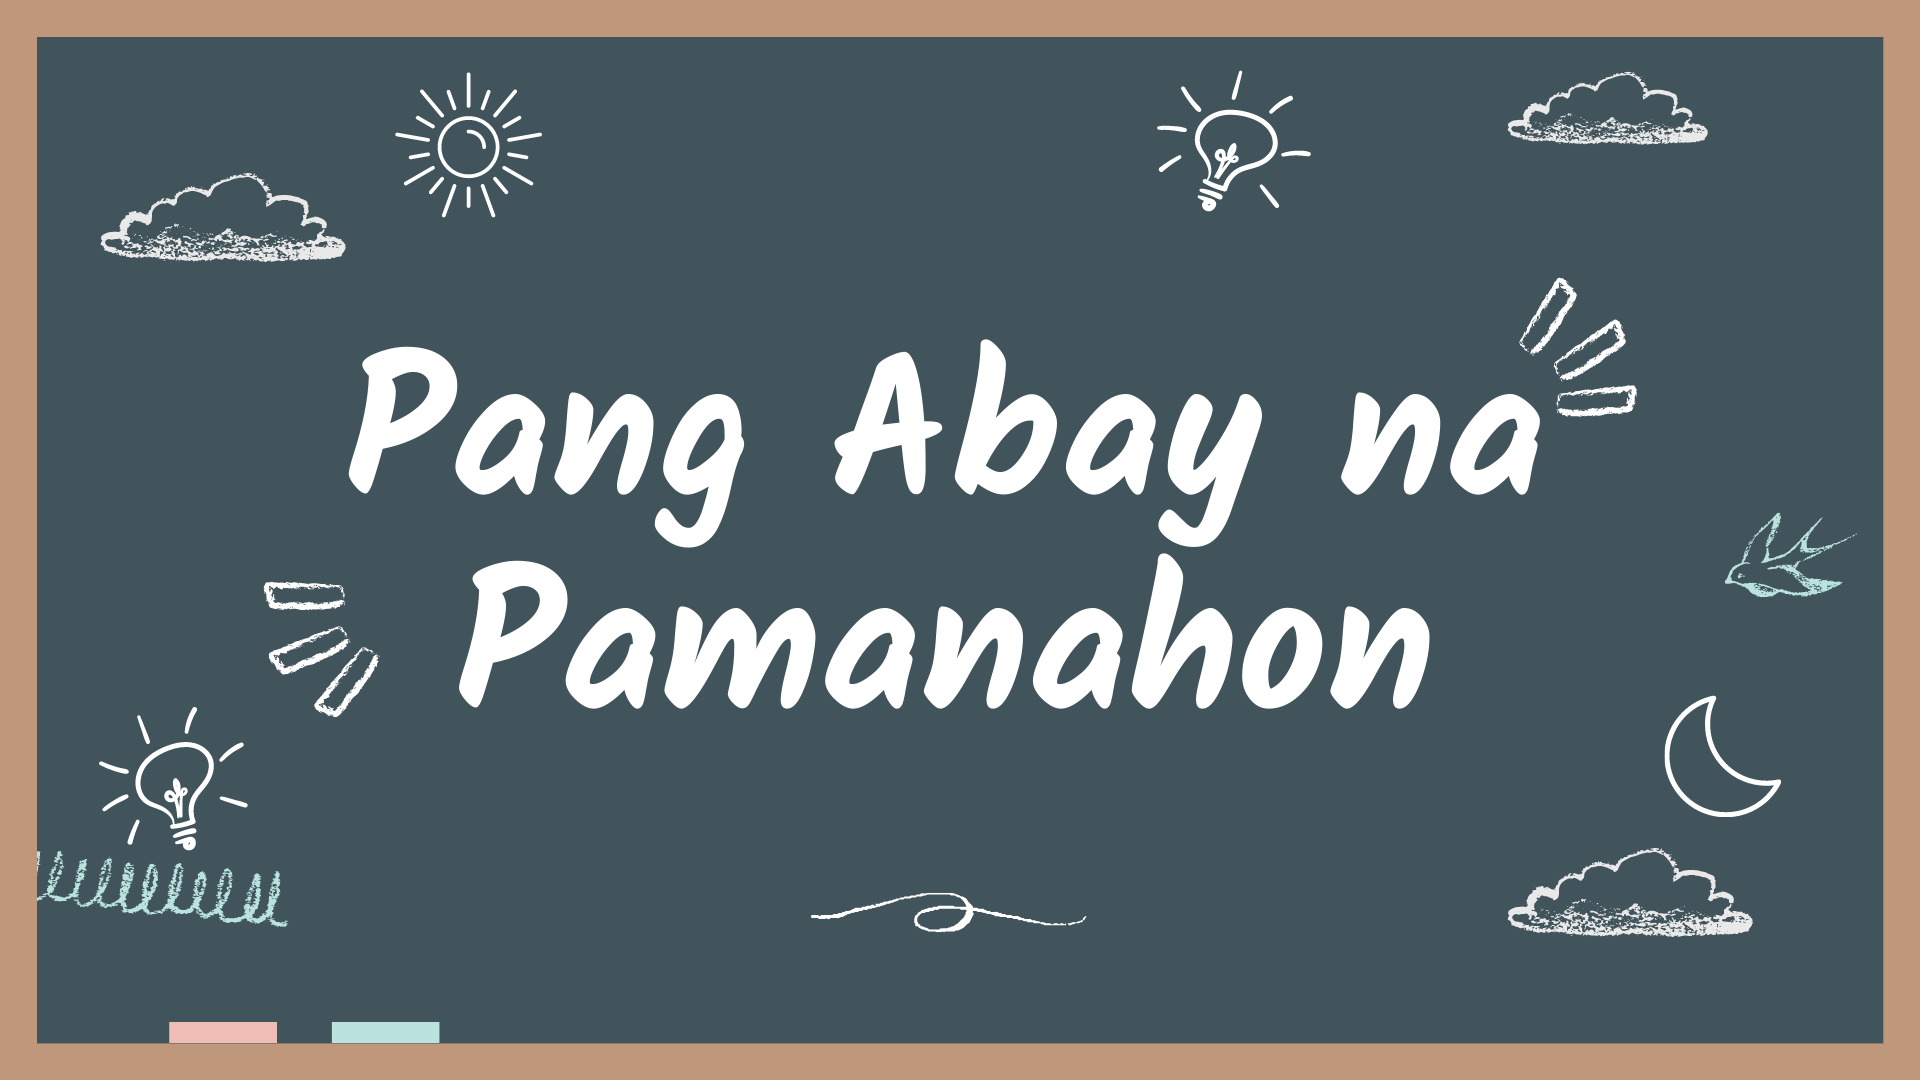 Pang-abay na Pamanahon - Aralin Philippines